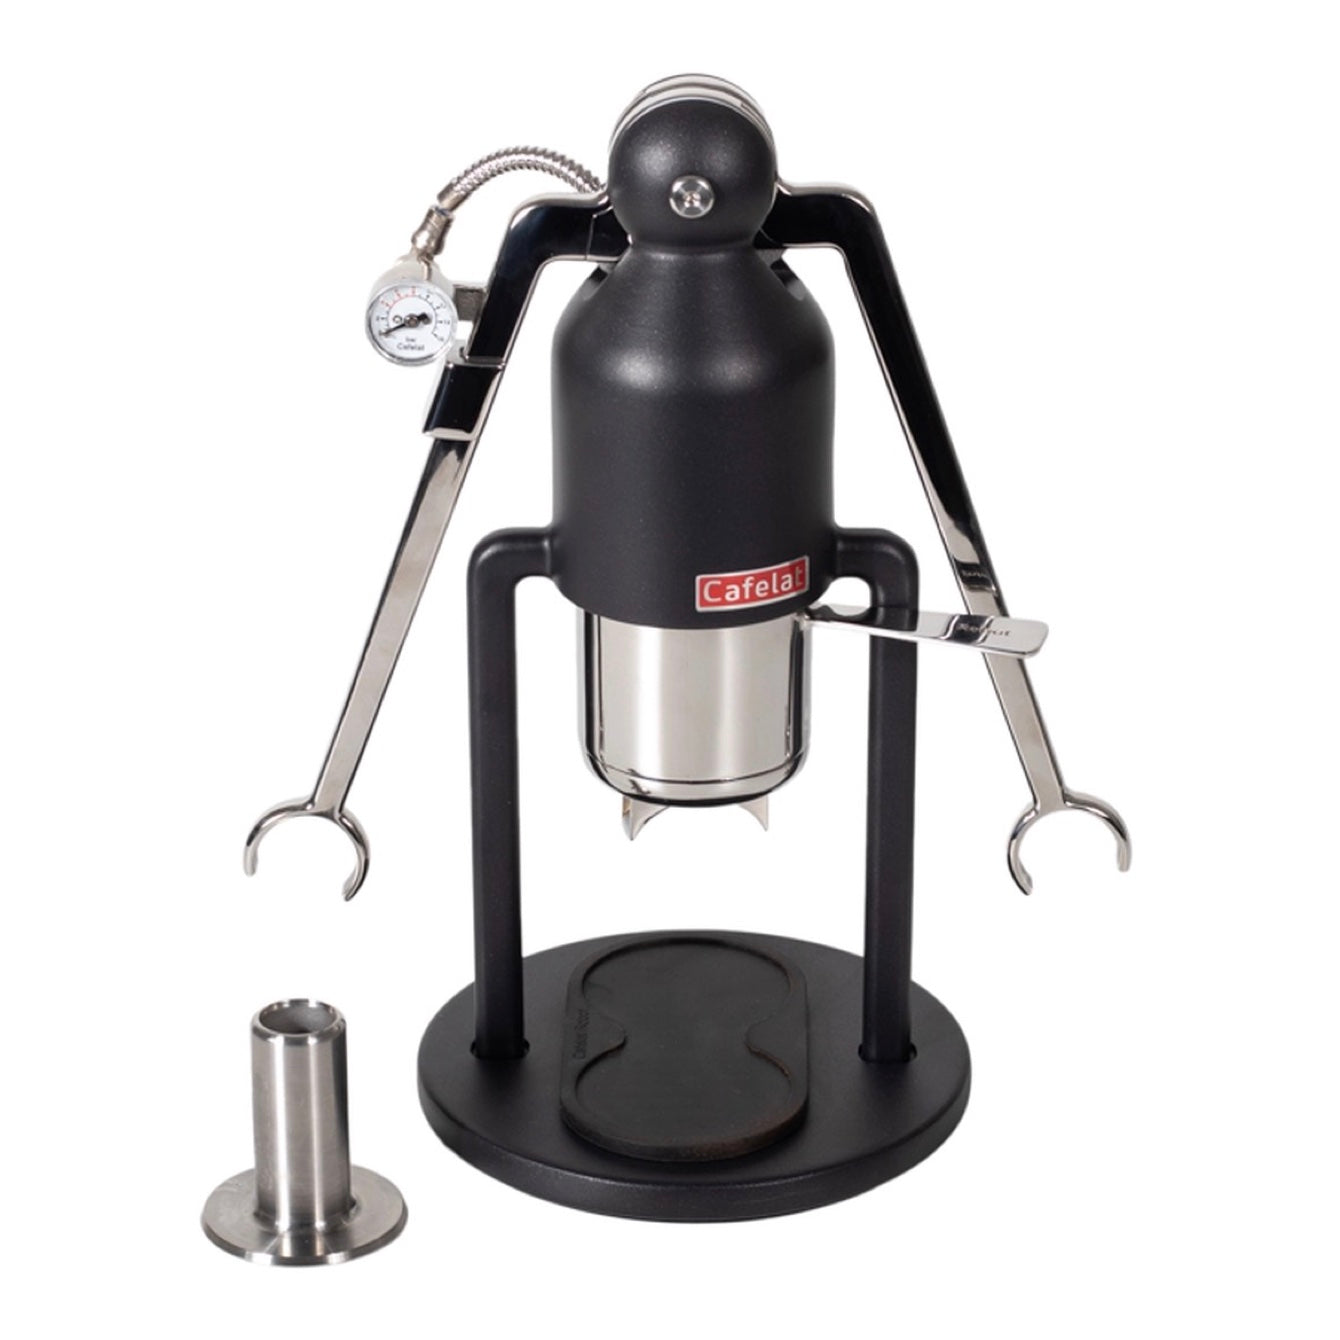 Cafelat Robot Espresso Maker (with pressure gauge)